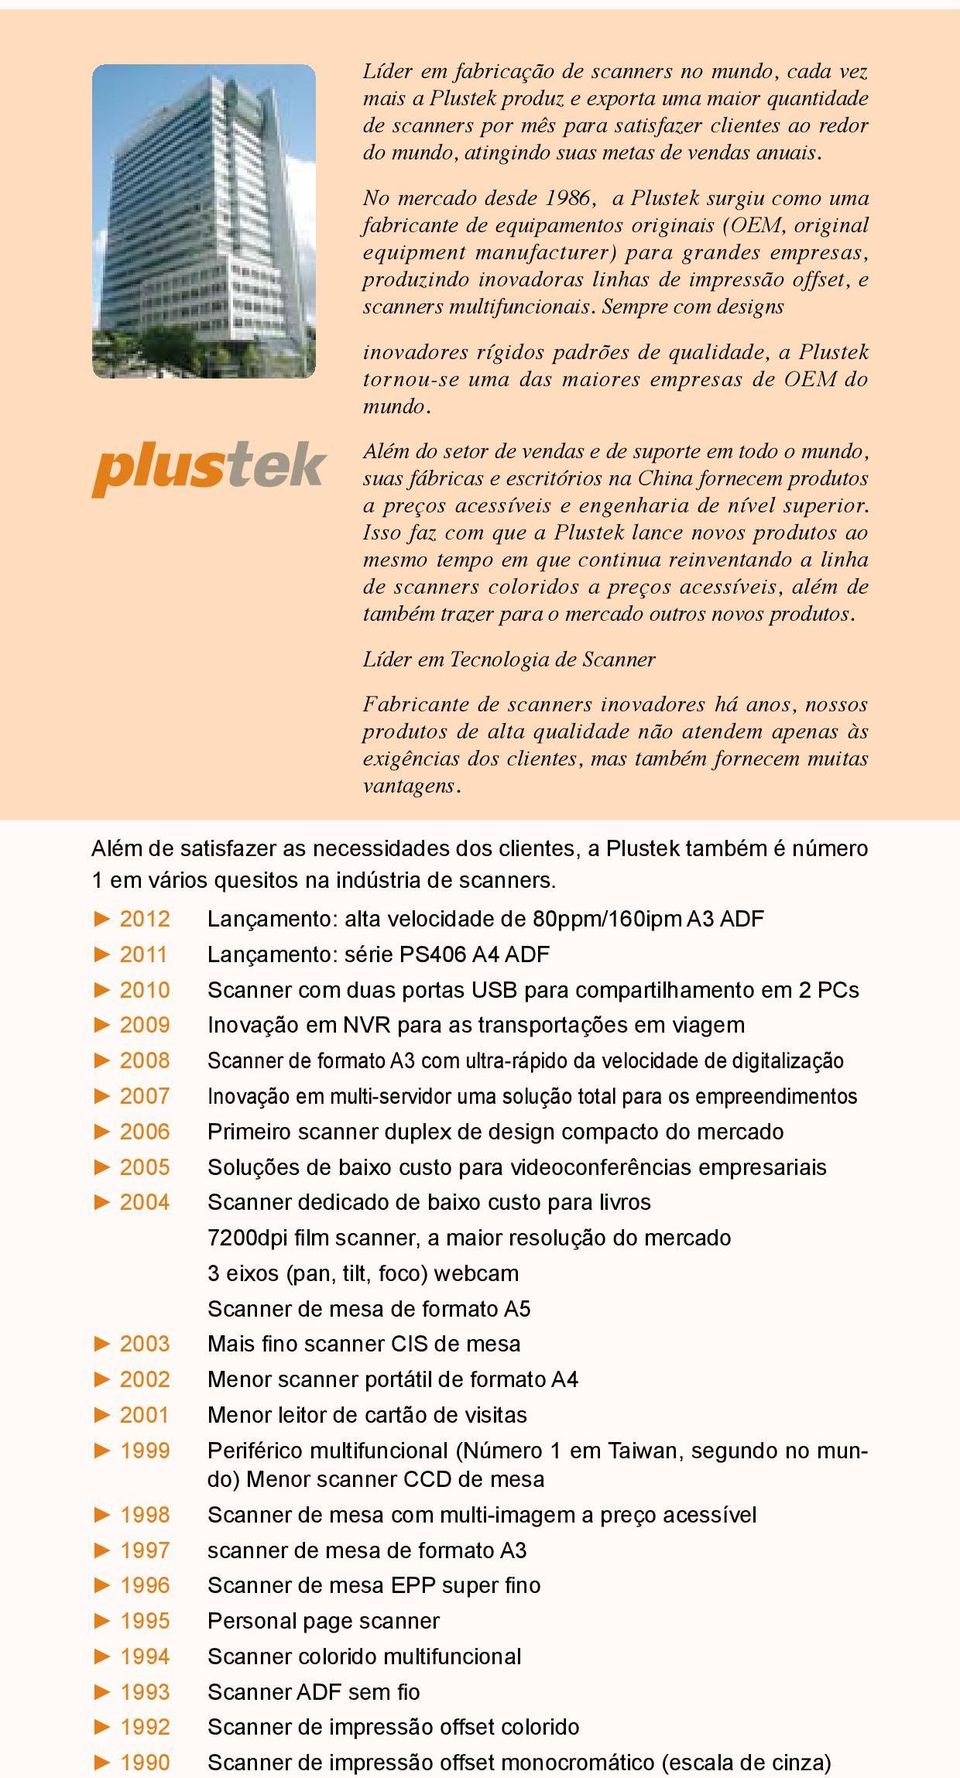 No mercado desde 1986, a Plustek surgiu como uma fabricante de equipamentos originais (OEM, original equipment manufacturer) para grandes empresas, produzindo inovadoras linhas de impressão offset, e